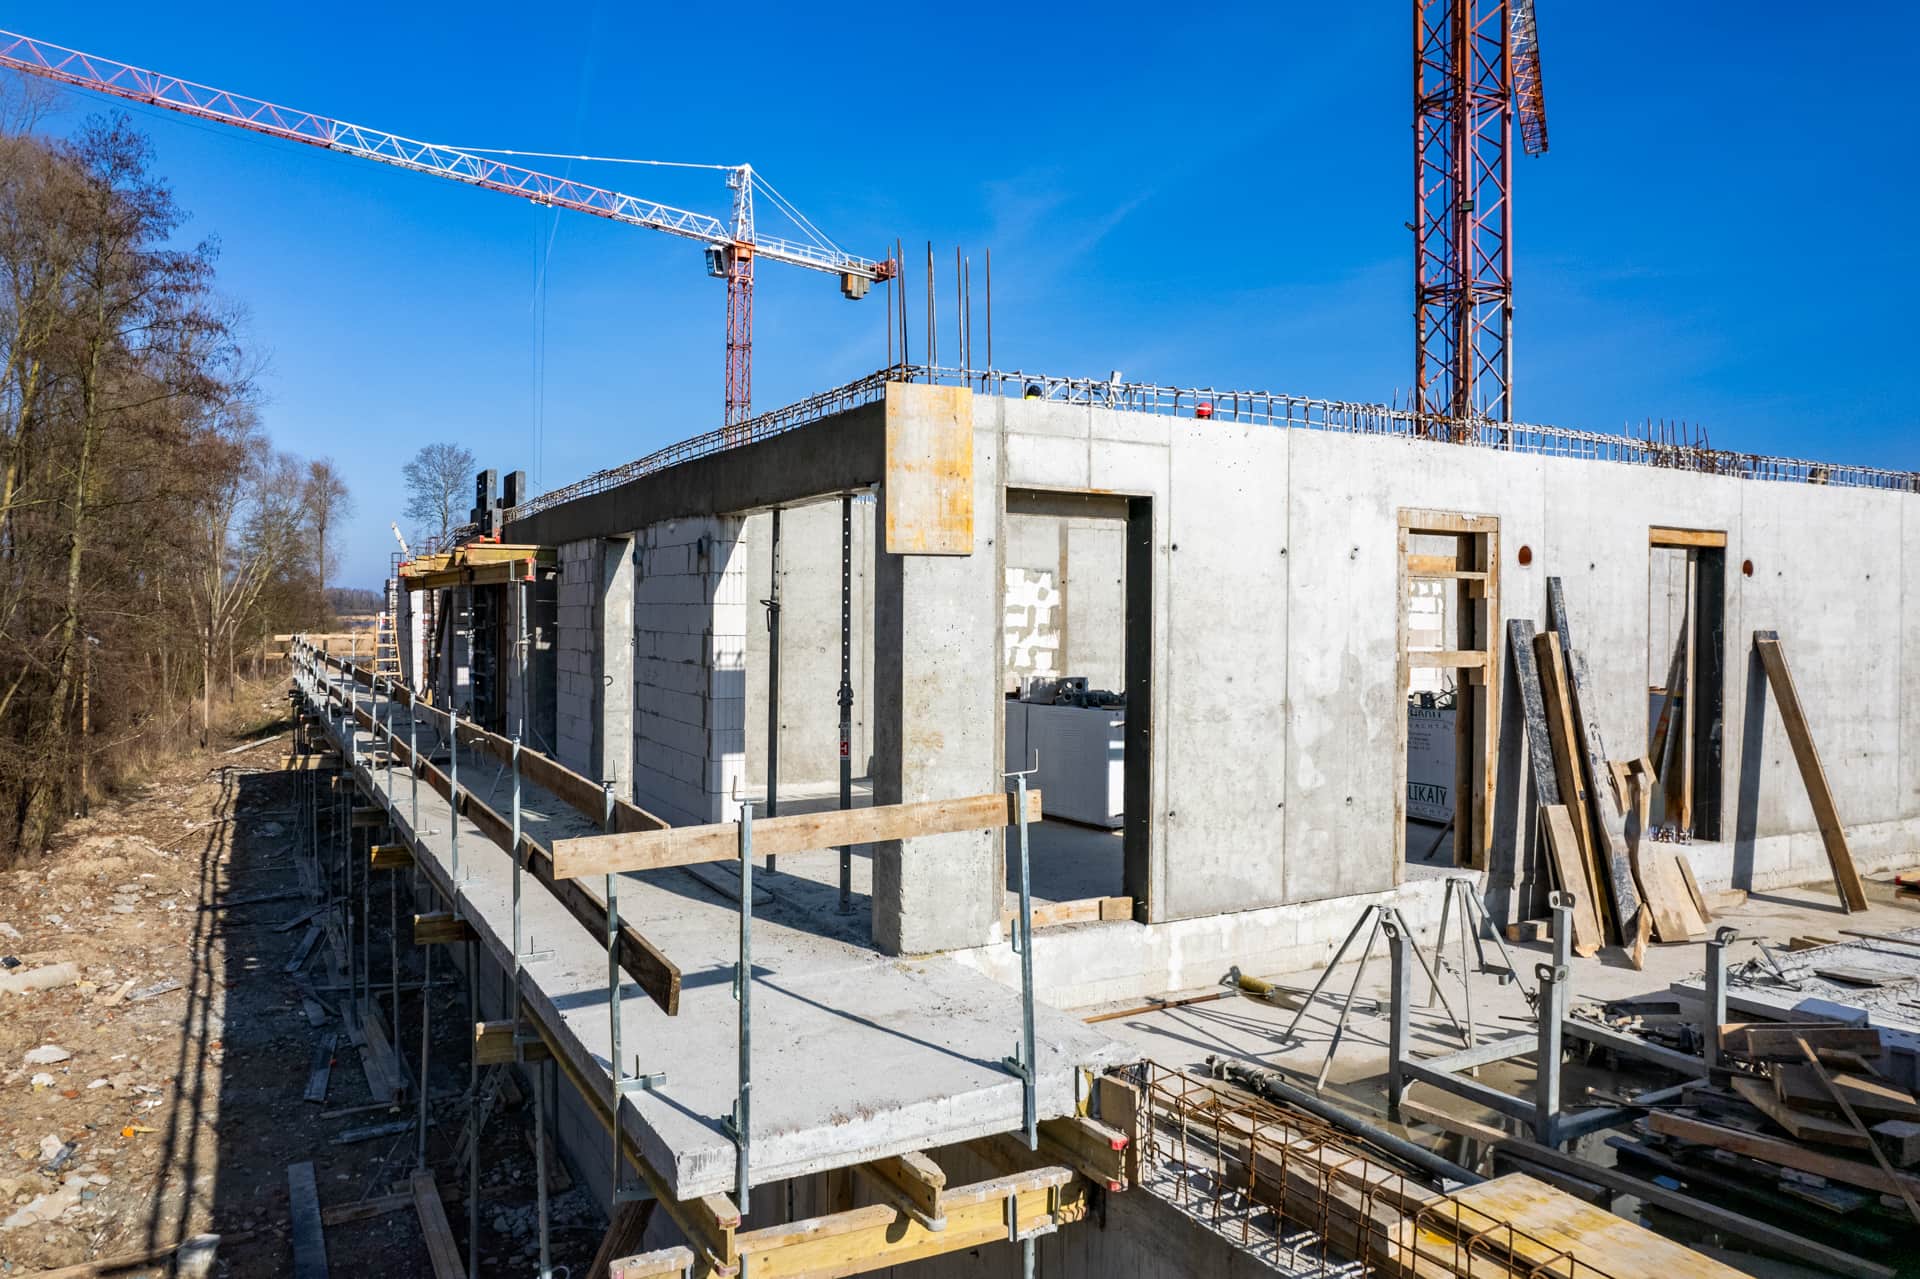 Dziennik budowy, Dziennik budowy Victoria Apartments II w Szczecinie - marzec 2024